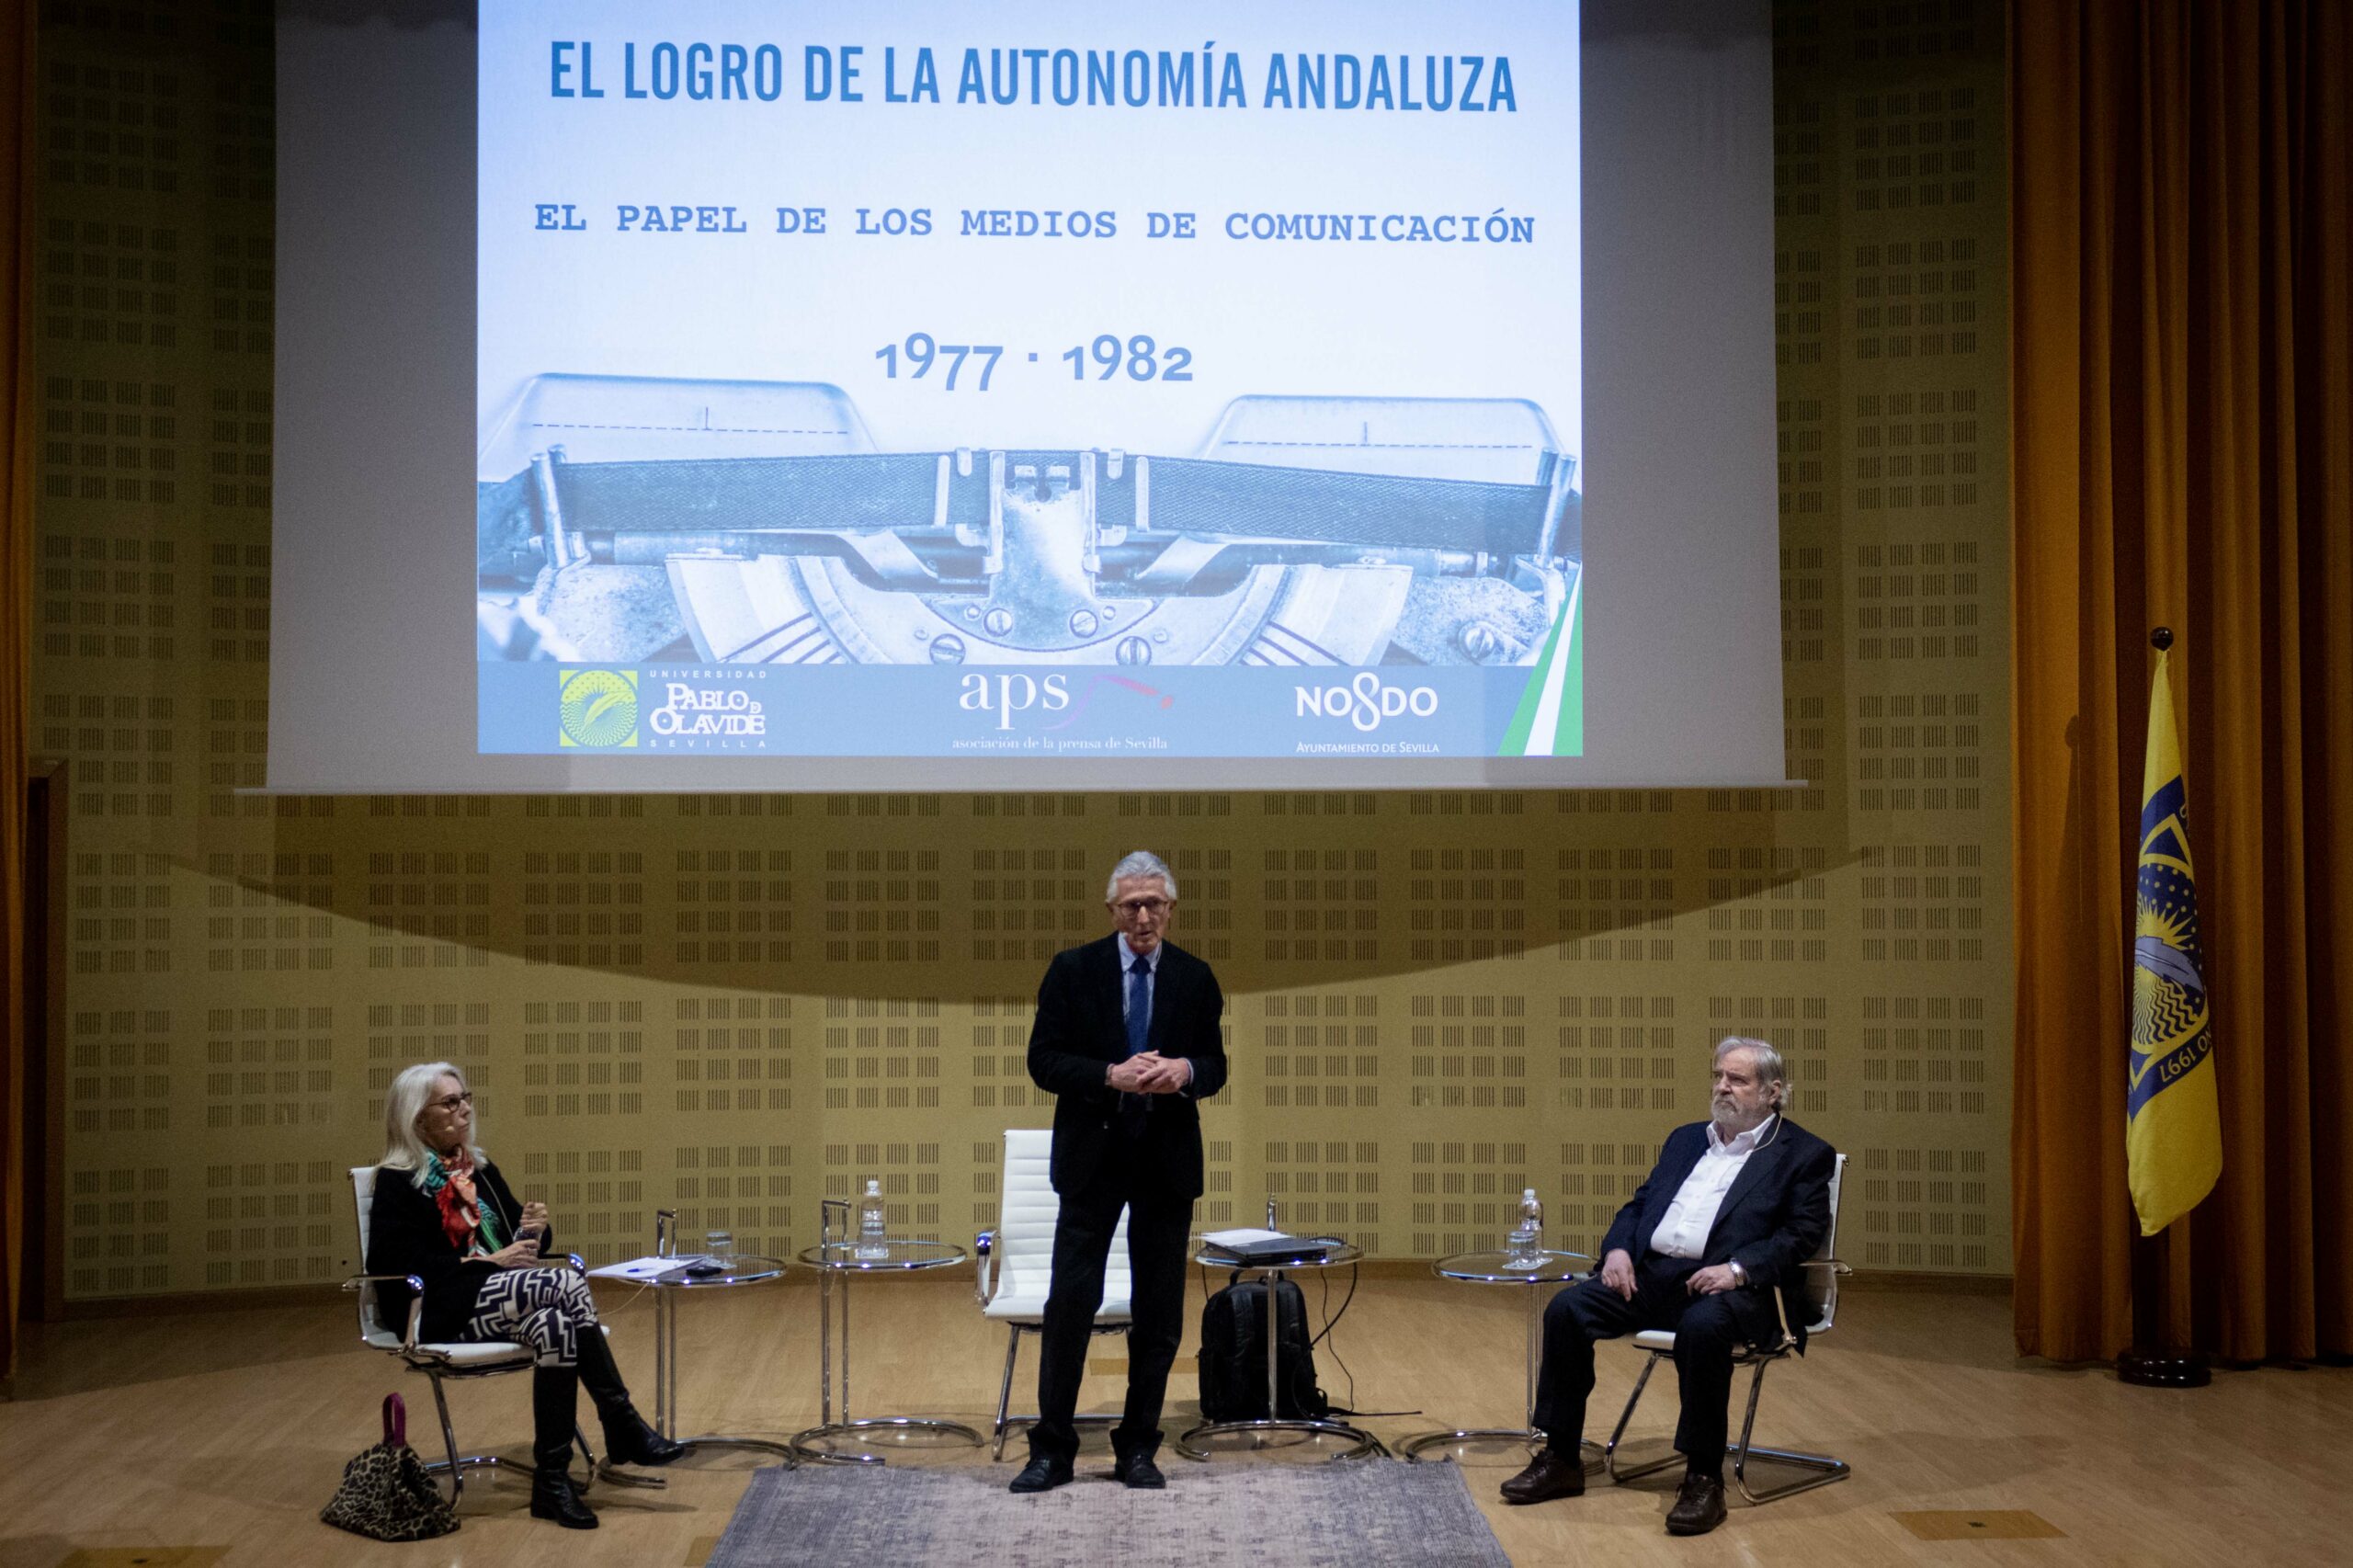 La Universidad Pablo de Olavide y la Asociación de la Prensa de Sevilla  organizan el ciclo 'El logro de la autonomía andaluza' – DUPO – Diario de  la Universidad Pablo de Olavide